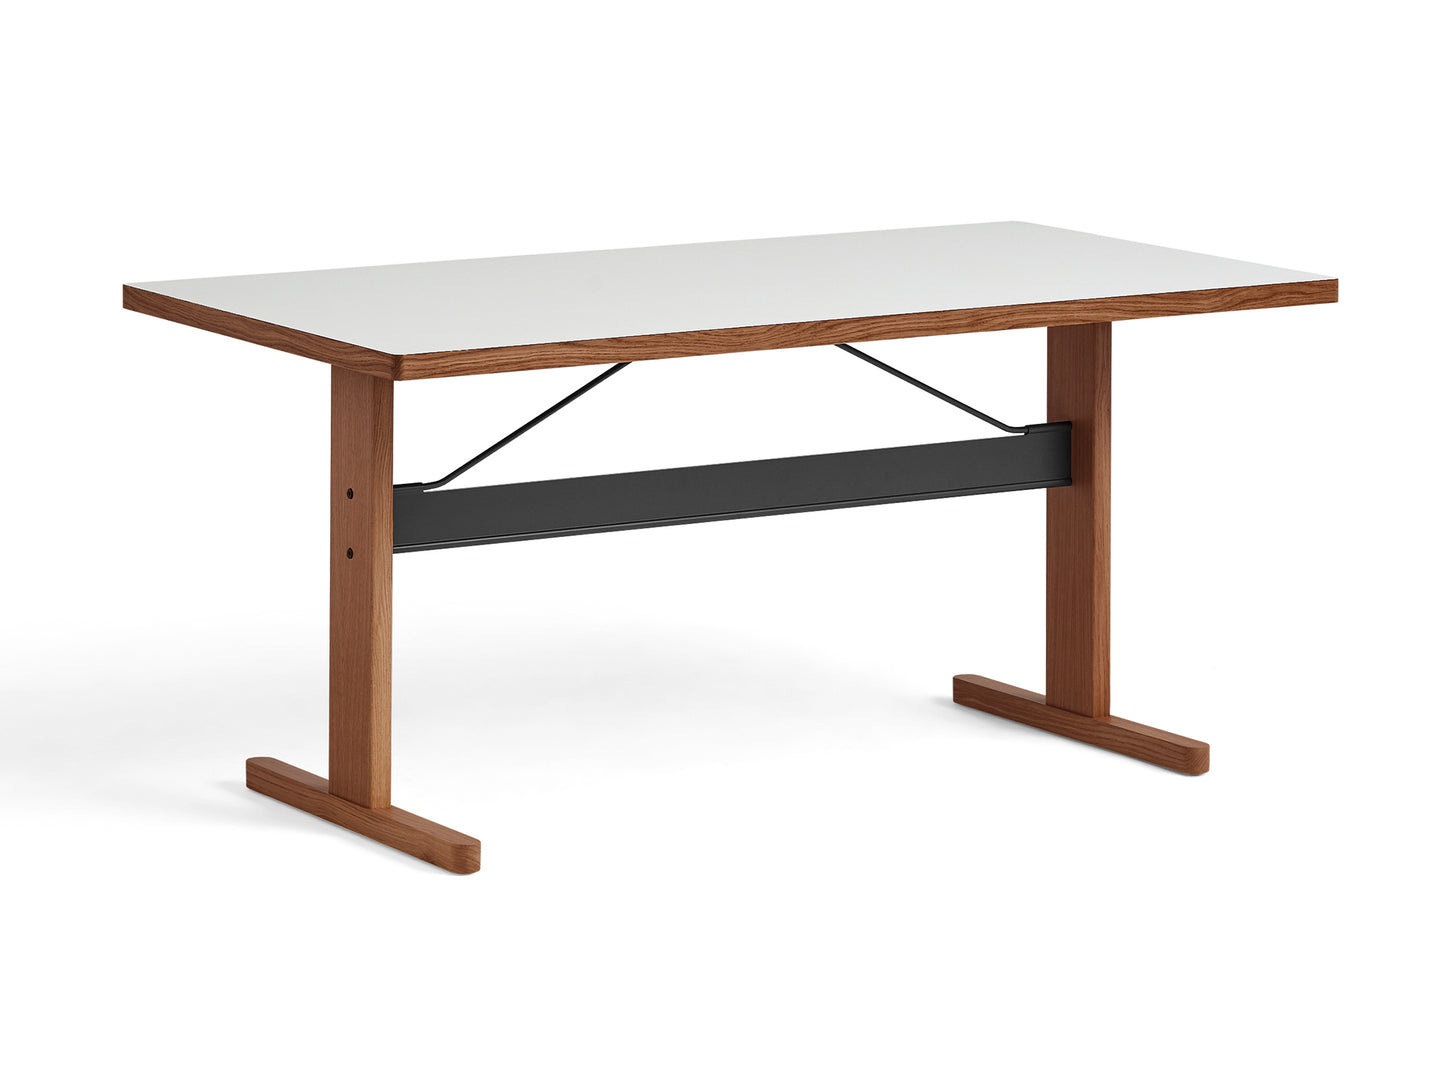 Passerelle テーブル (ラミネートとリノリウムのテーブルトップ)